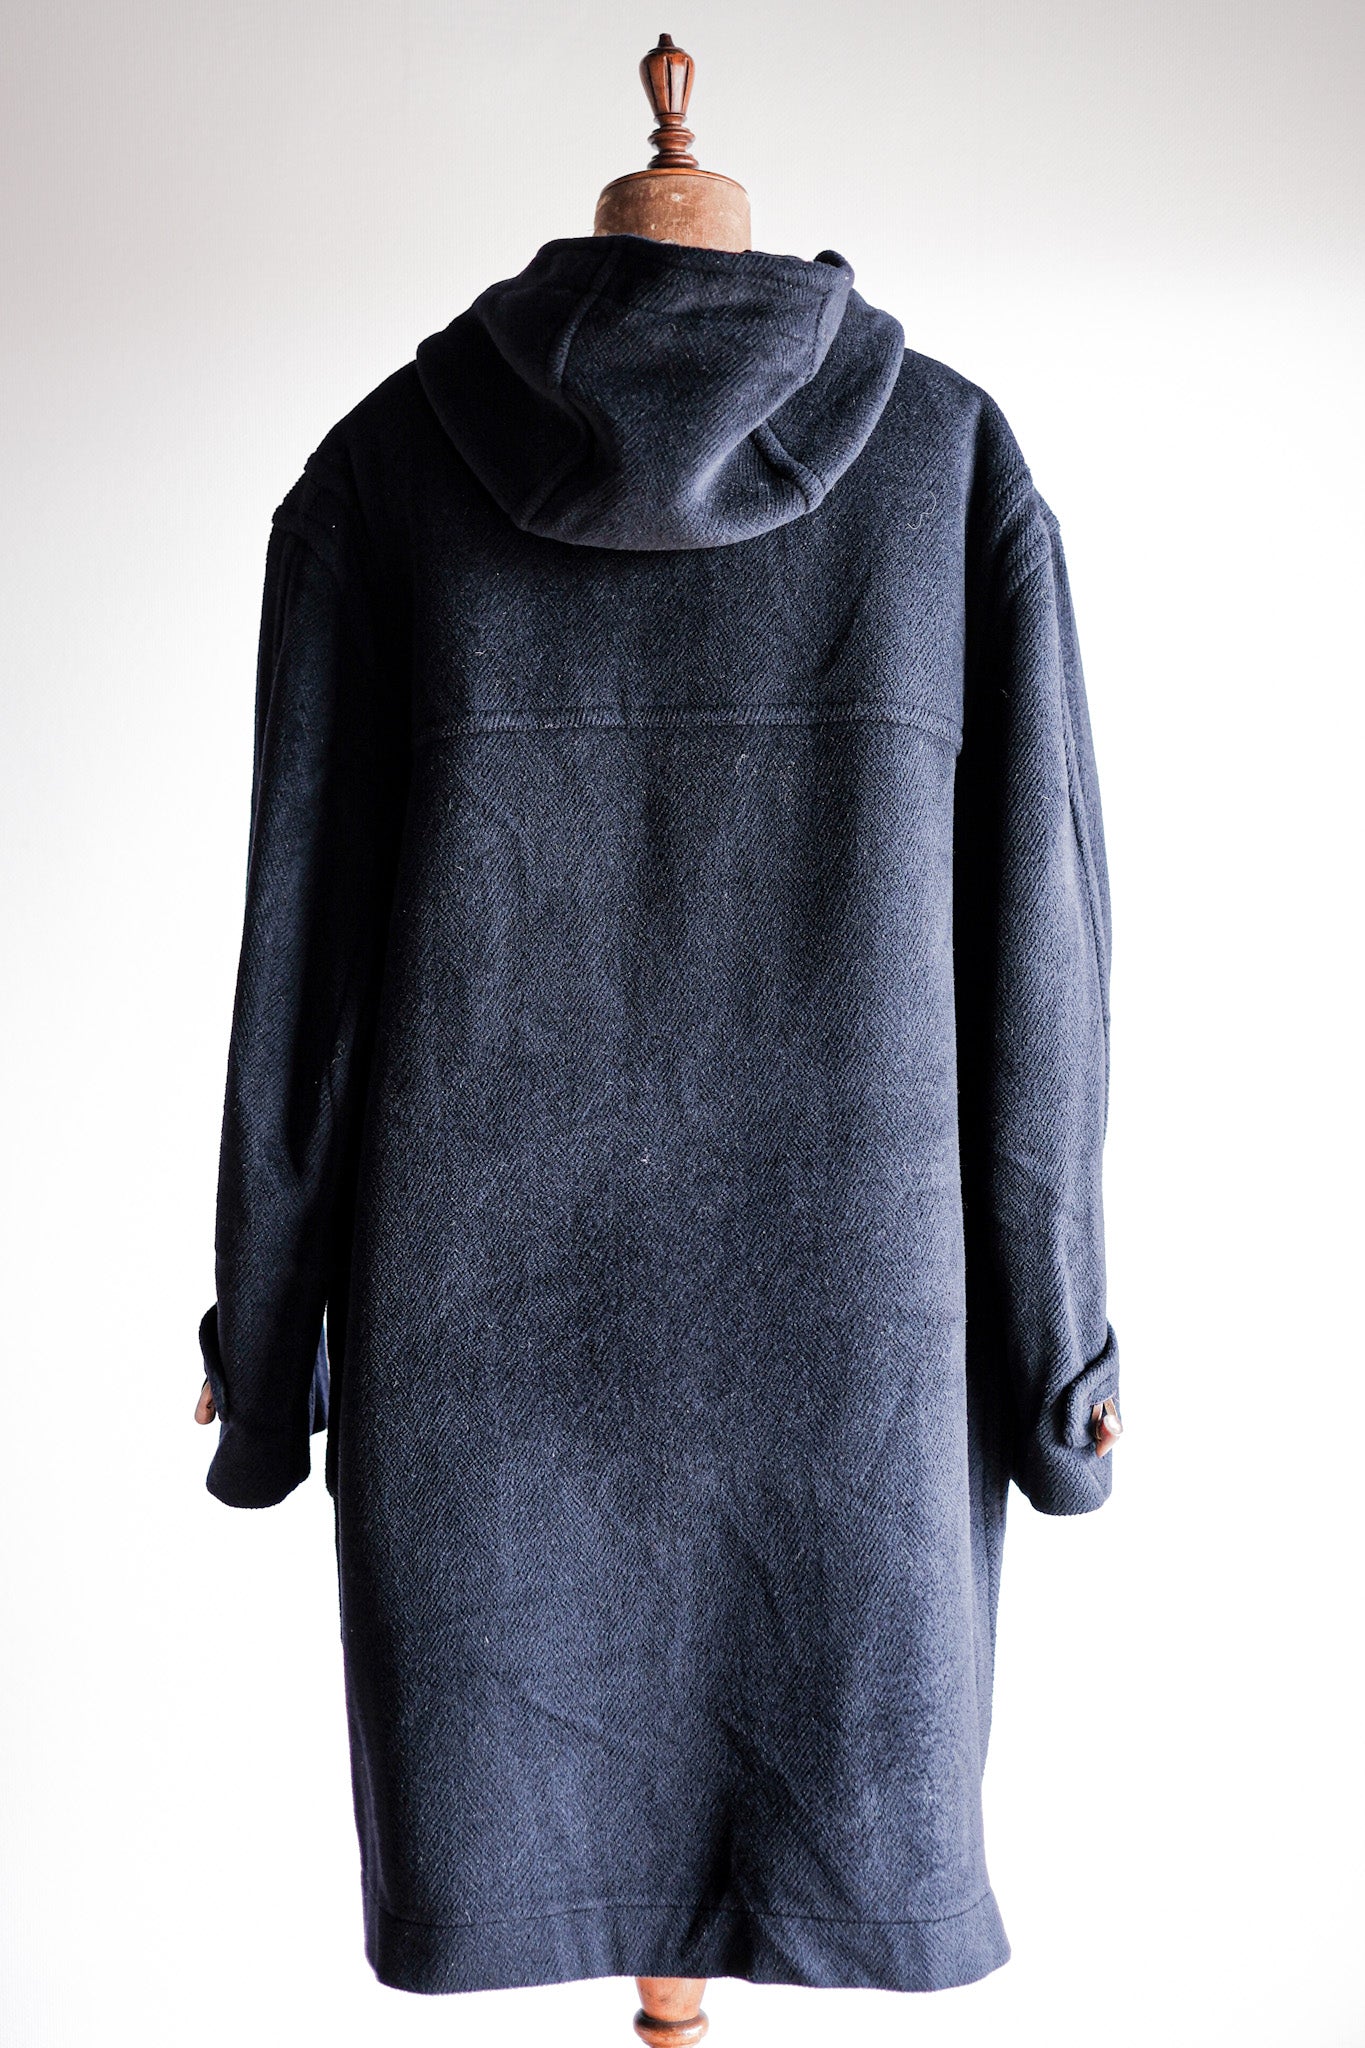 [〜90年代]復古格倫費爾羊毛行李外套的尺寸。44“ Moorbrook”